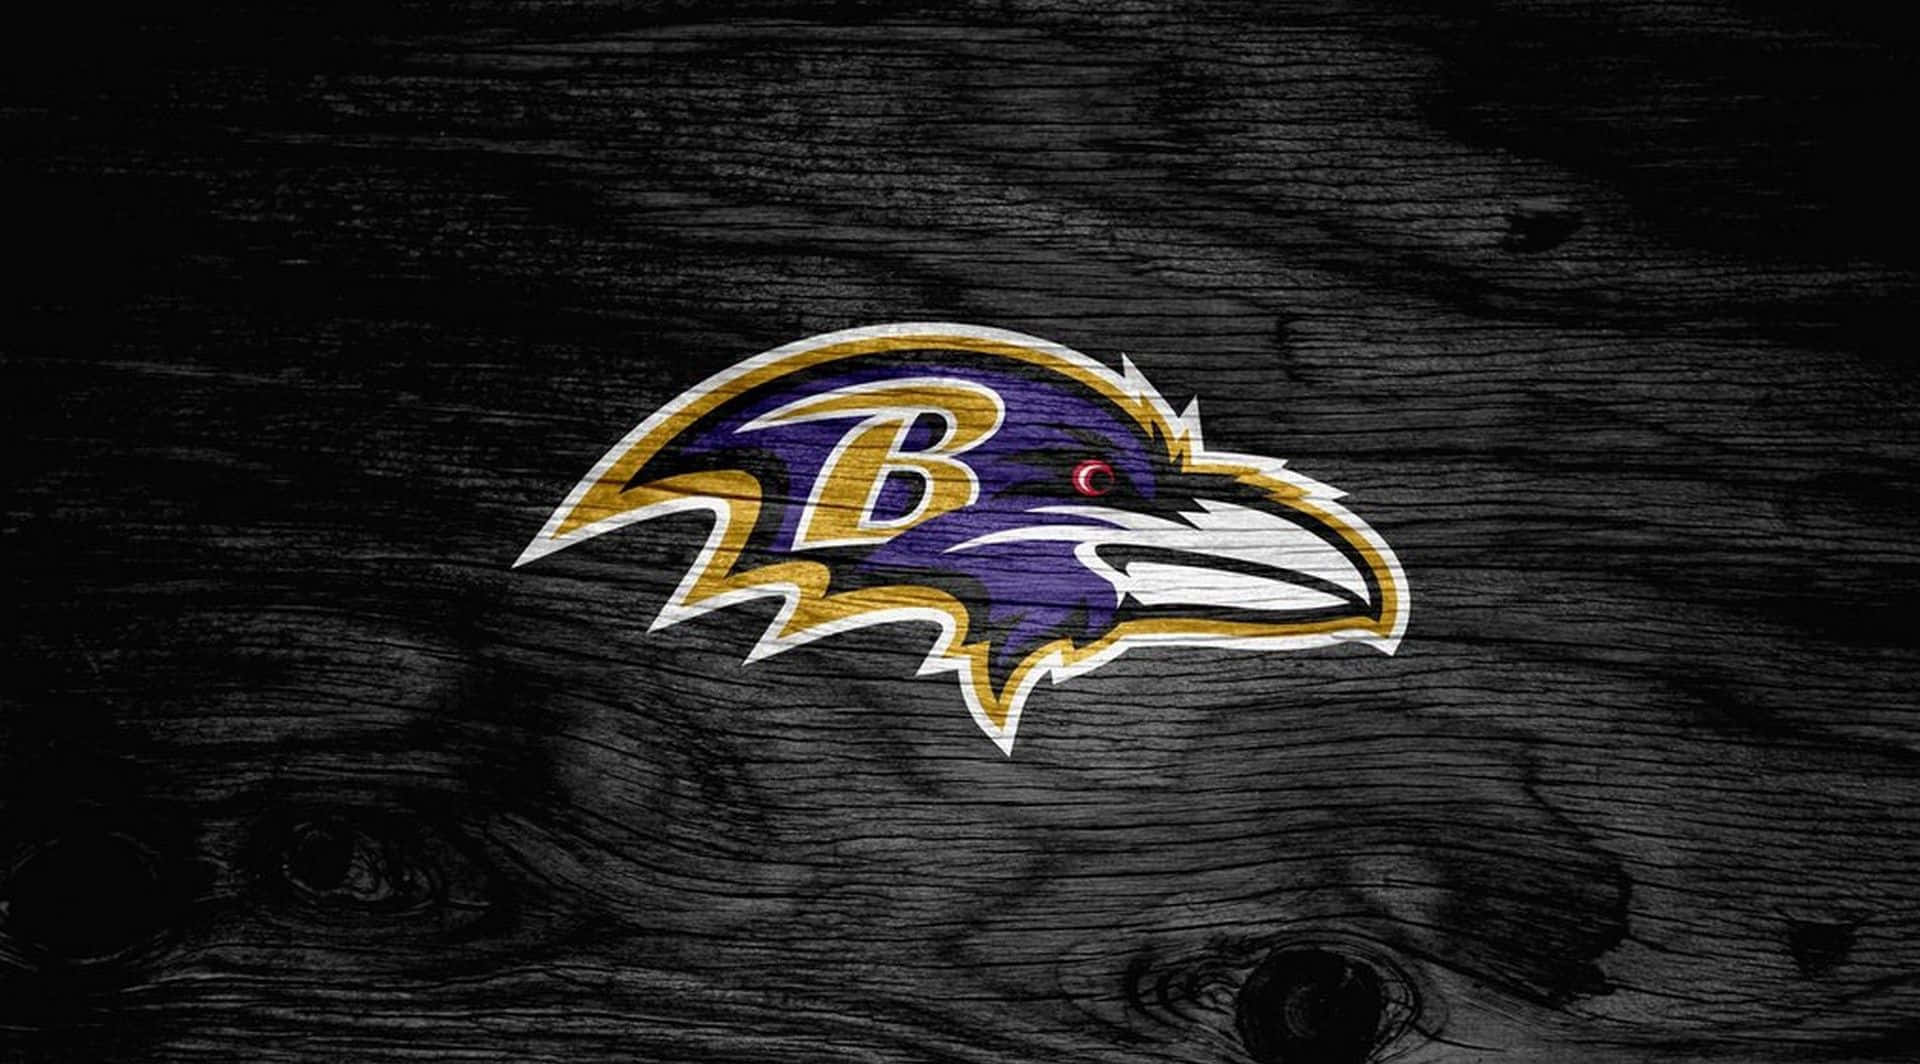 Ilmaestoso Logo Dei Baltimore Ravens.